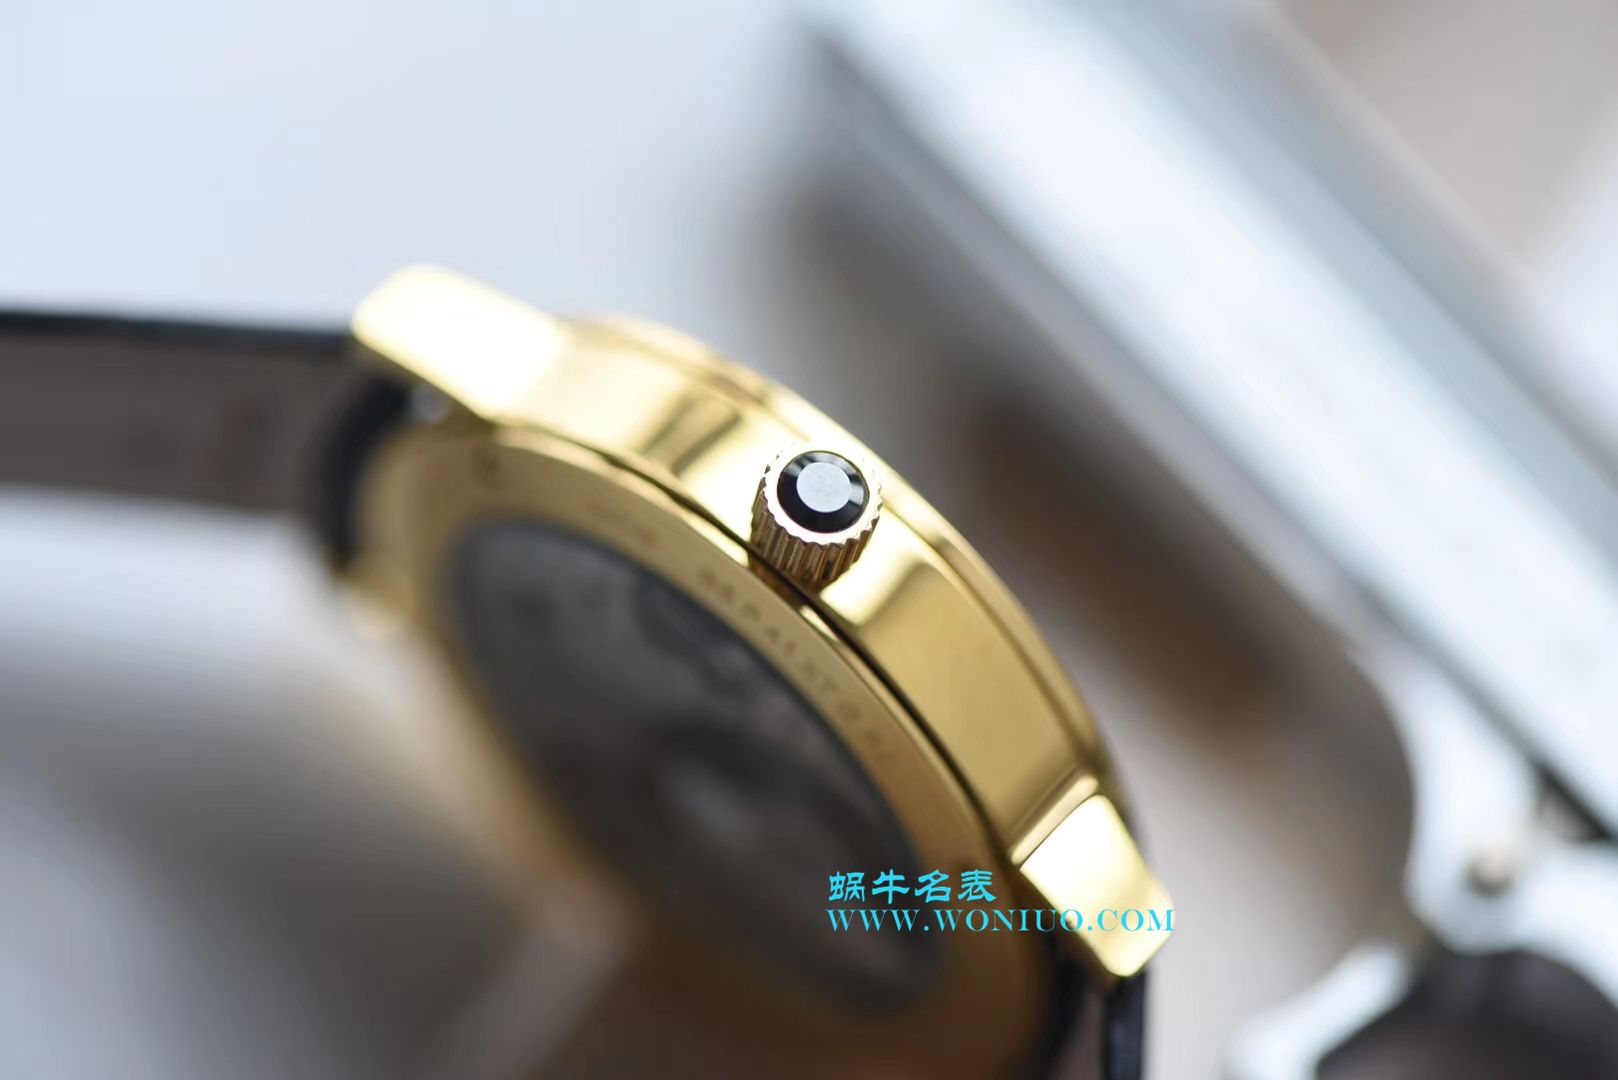 【台湾厂一比一超A高仿手表】宝格丽BVLGARI∙BVLGARI系列102359 BB41BGLXT腕表 / BZ019